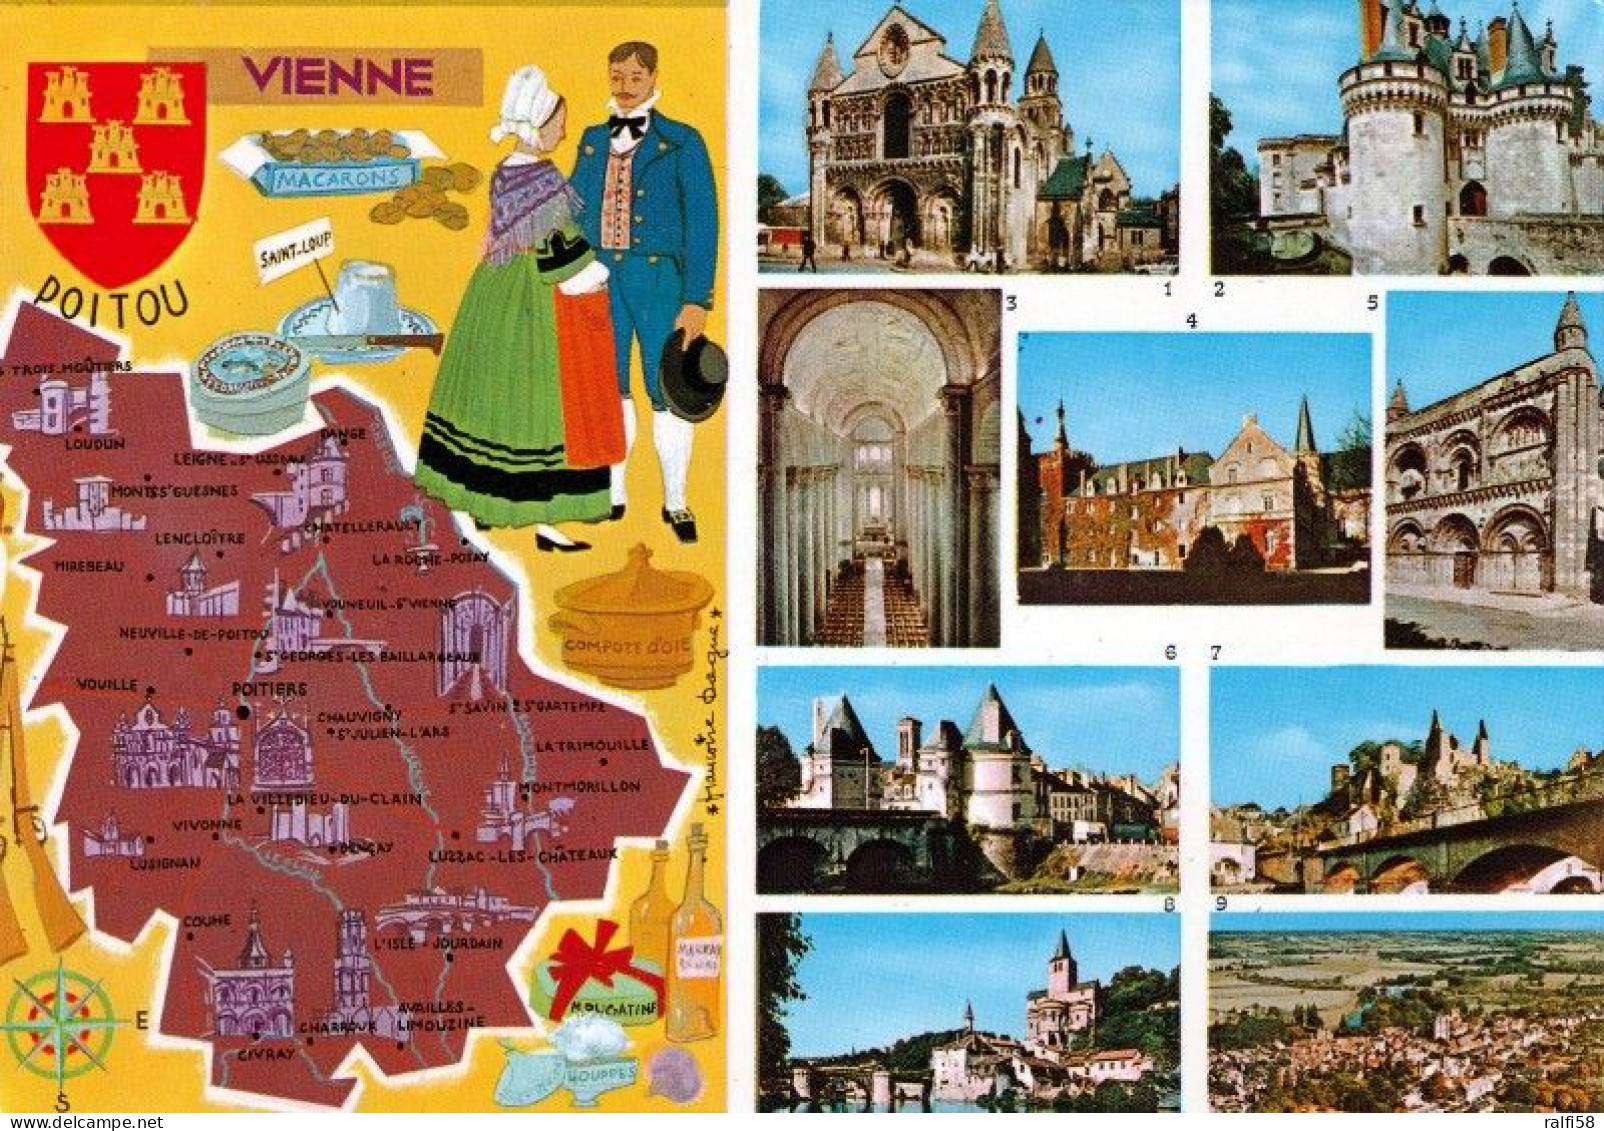 1 Map Of France * 1 Ansichtskarte Mit Der Landkarte - Département Vienne - Ordnungsnummer 86 * - Carte Geografiche